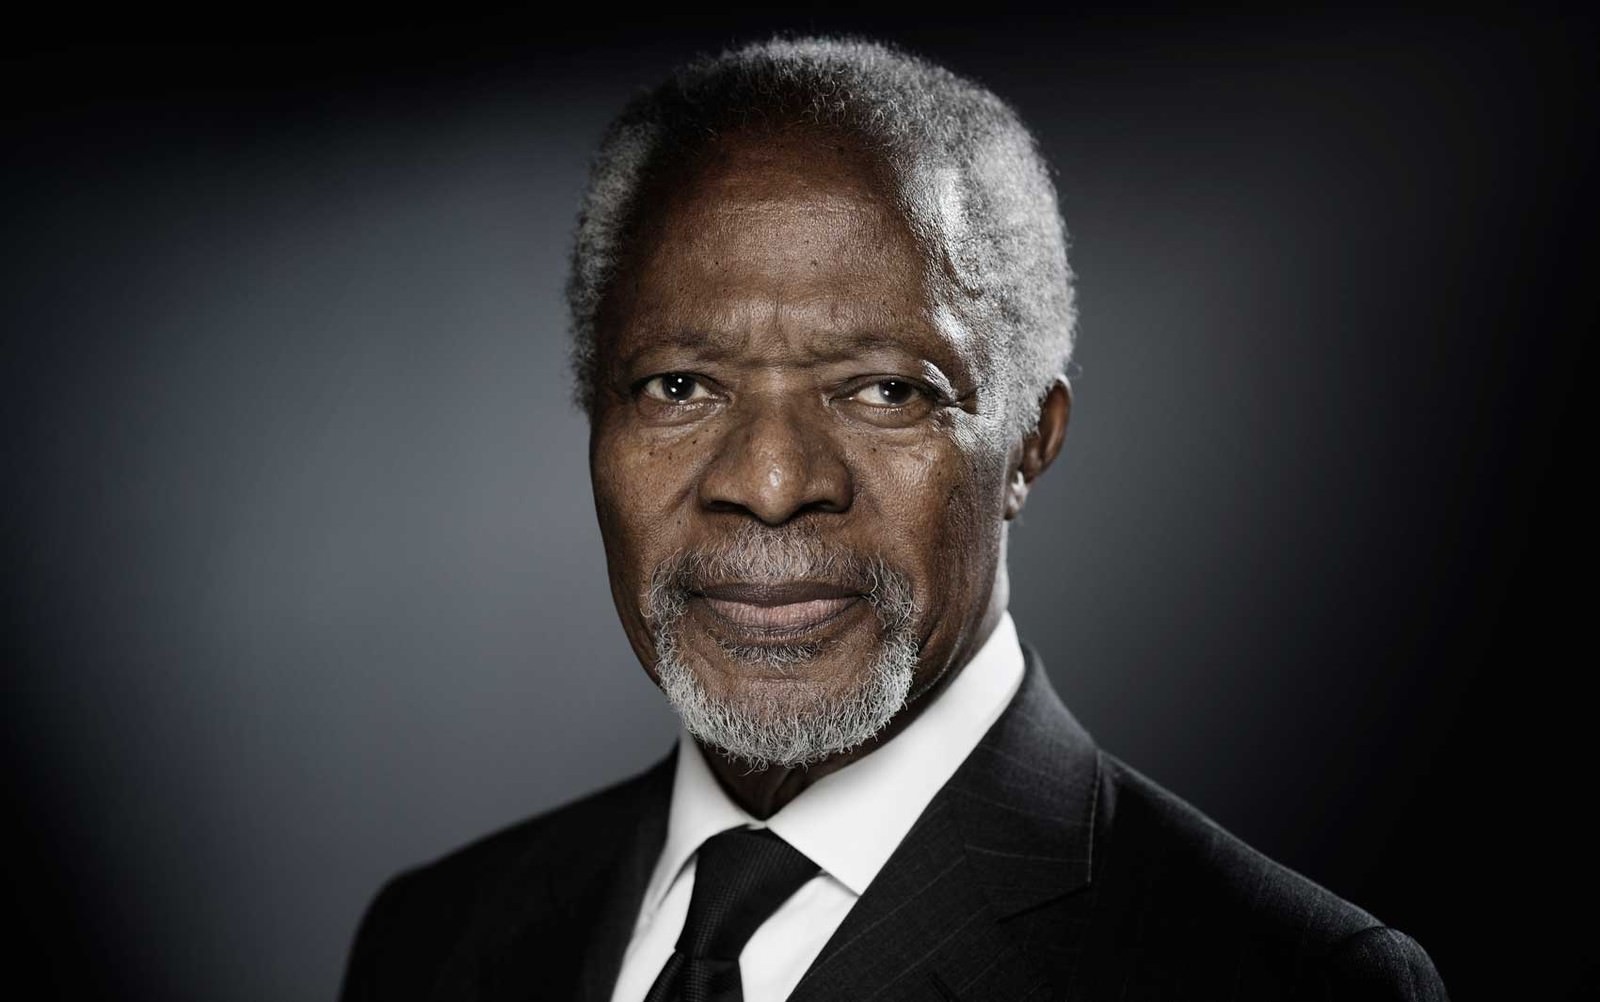 Morre Kofi Annan, ex-secretário-geral da ONU e Nobel da Paz